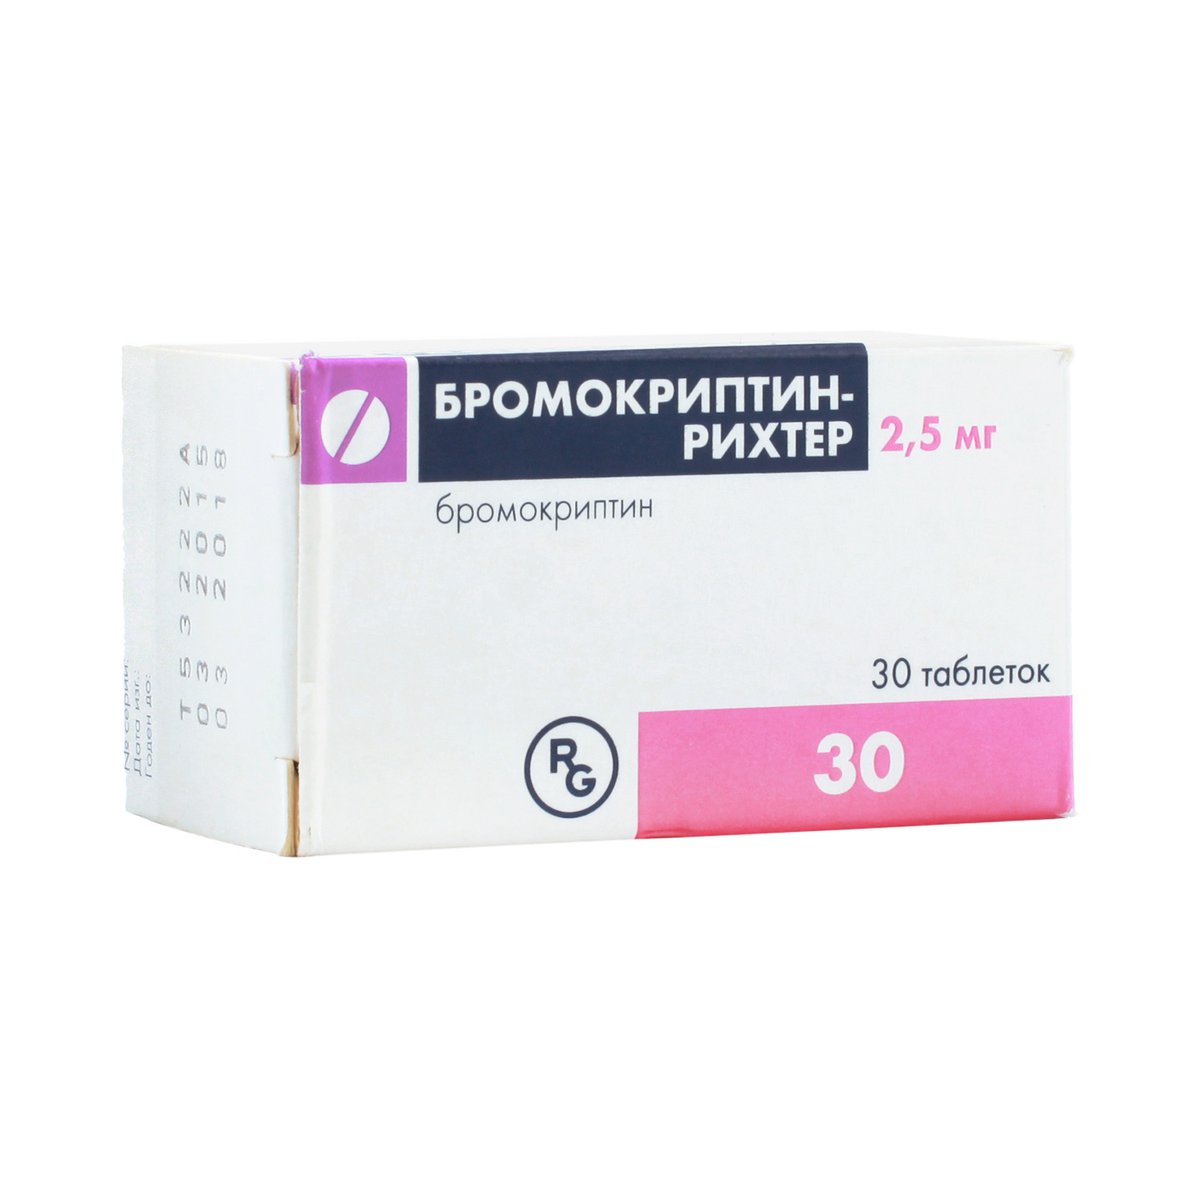 Бромокриптин-рихтер (таблетки, 30 шт, 2,5 мг) - цена,  онлайн в .